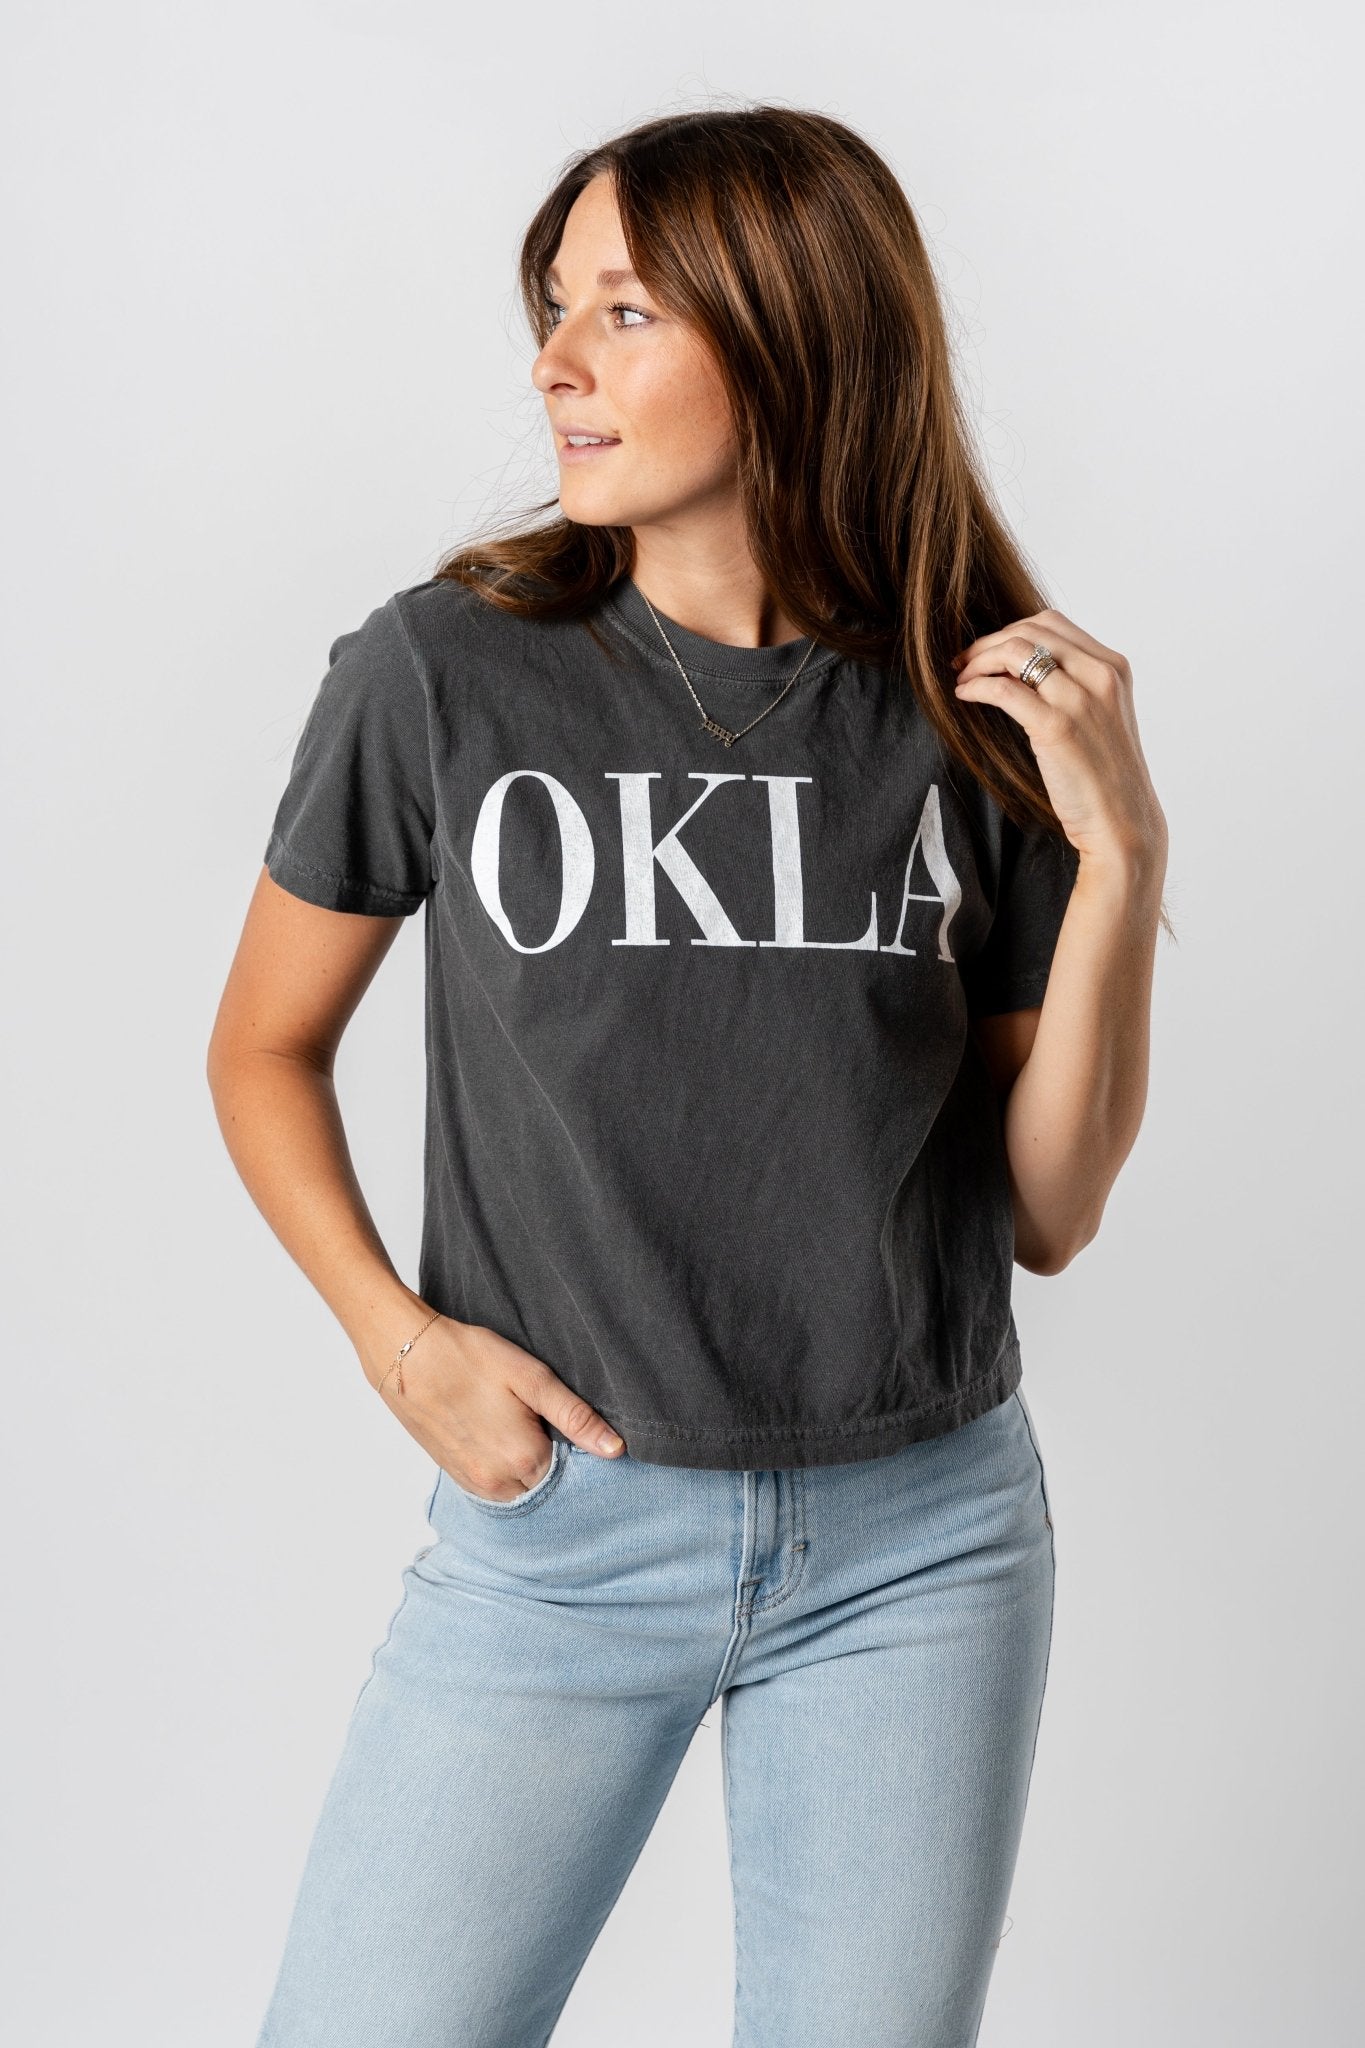 OKLA Vogue comfort color crop t-shirt pepper